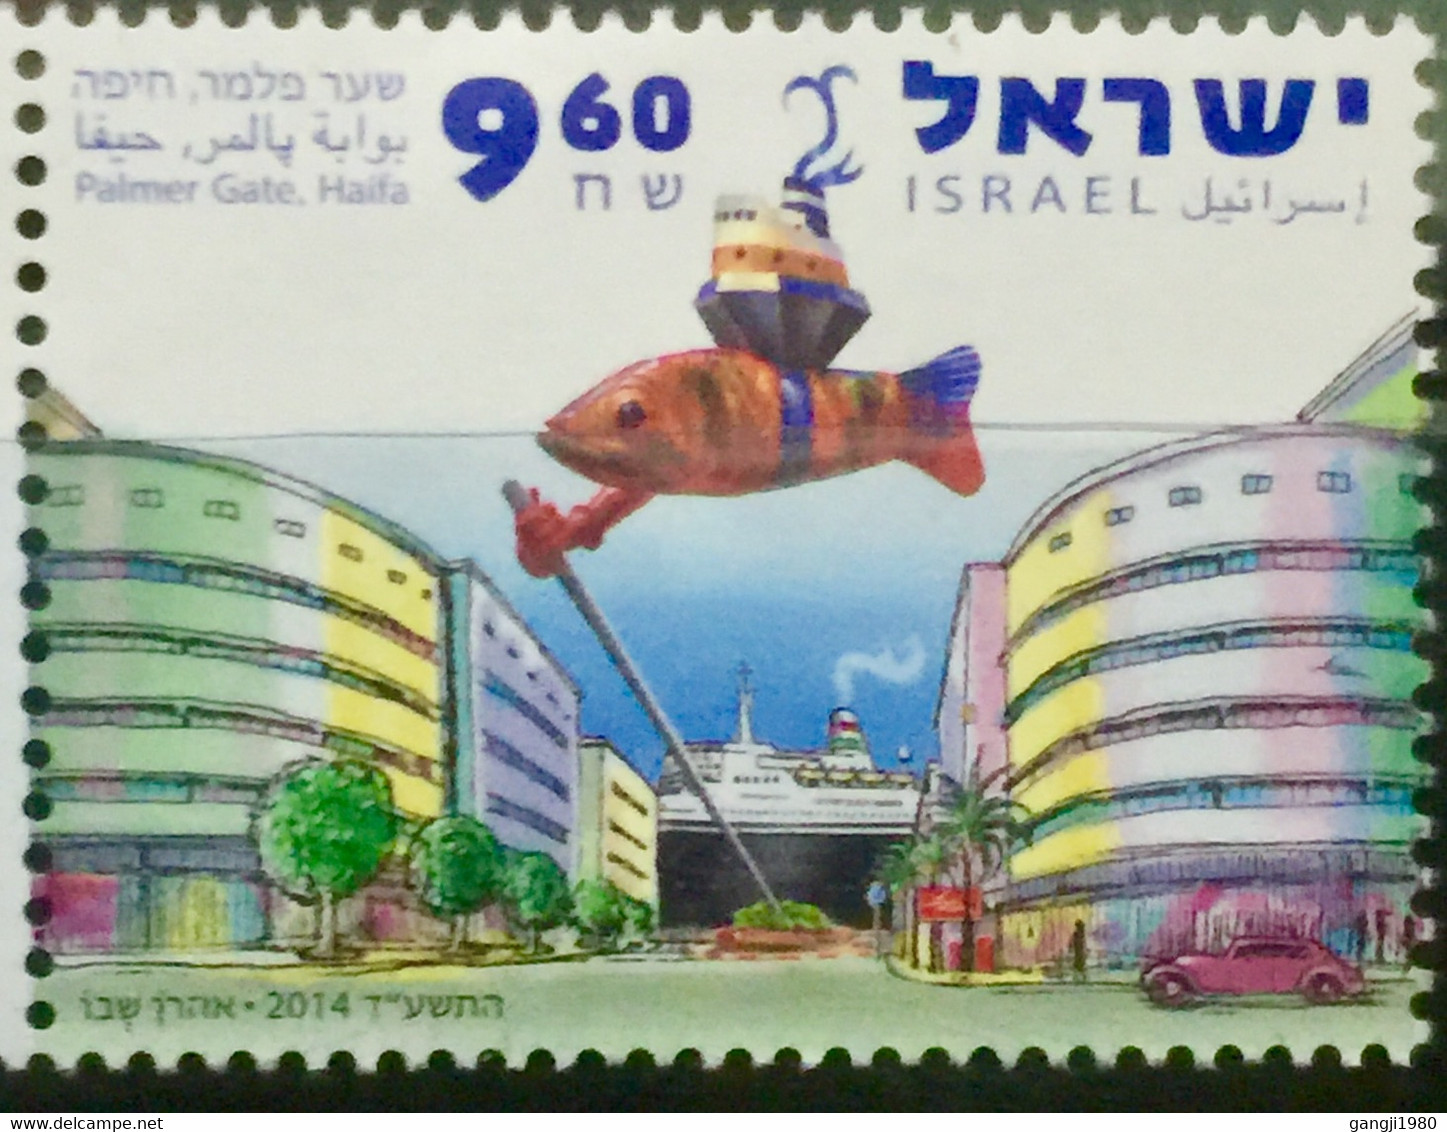 ISRAEL 2014 MNH STAMP ON PALMER GATE HAIFA - Altri & Non Classificati